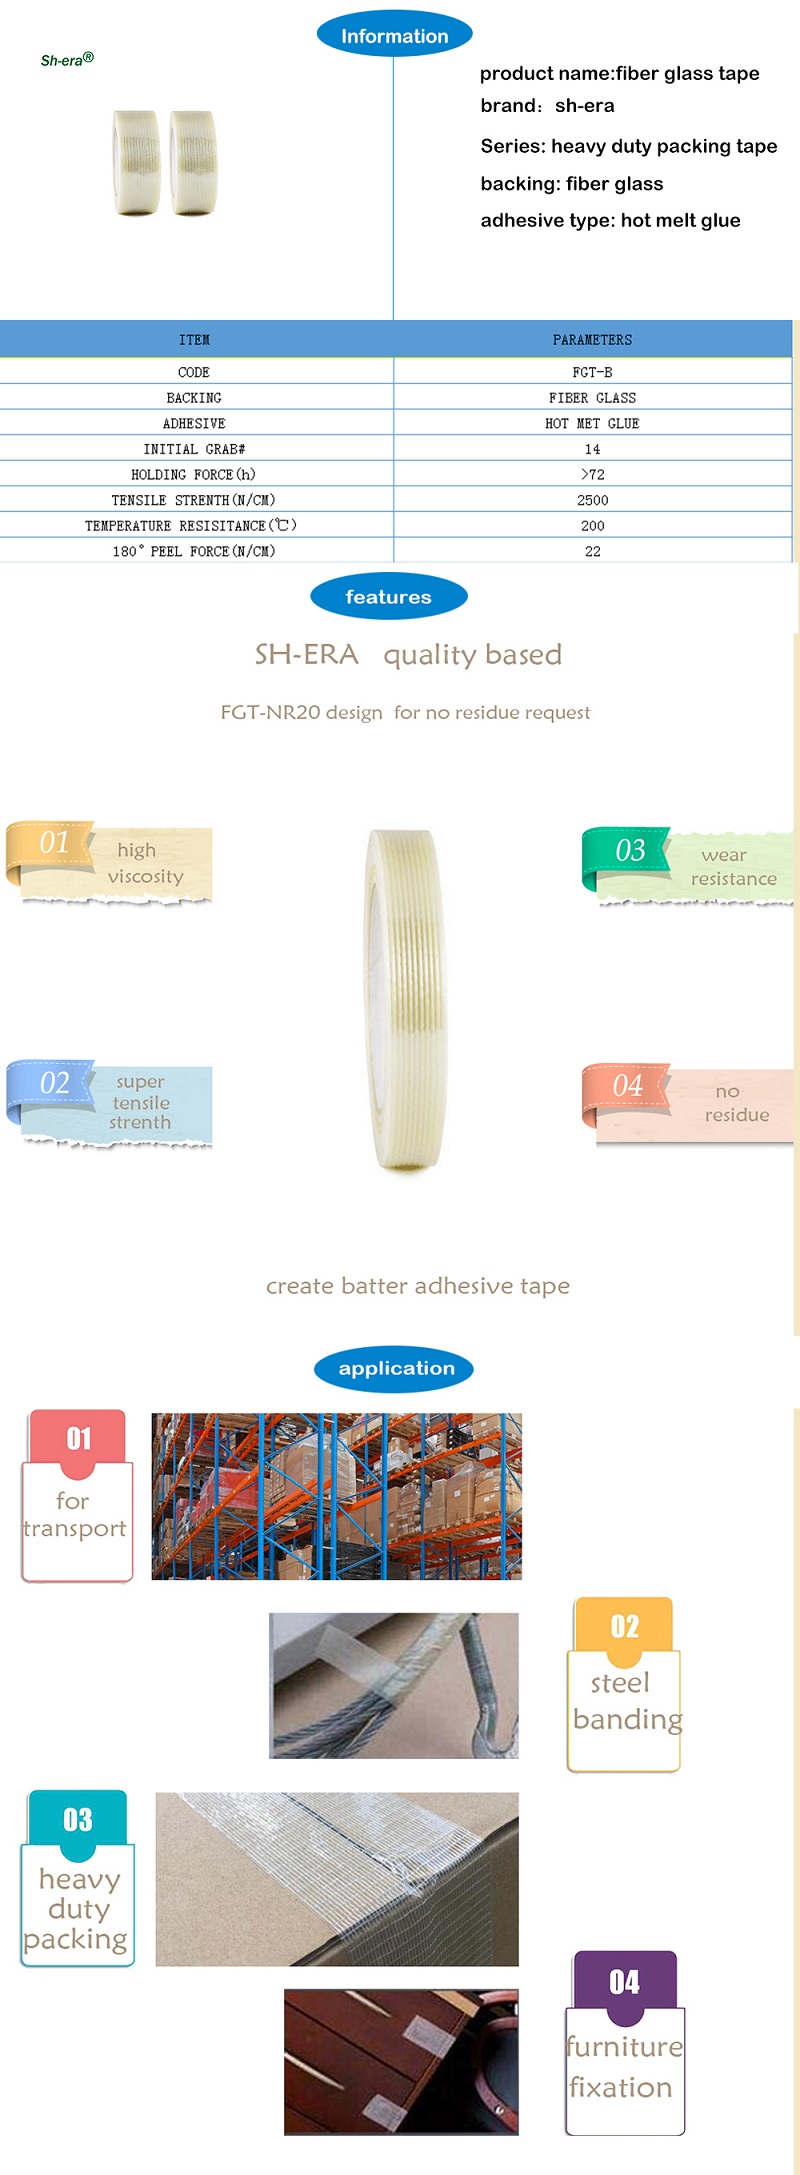 beskrivning av filamentband